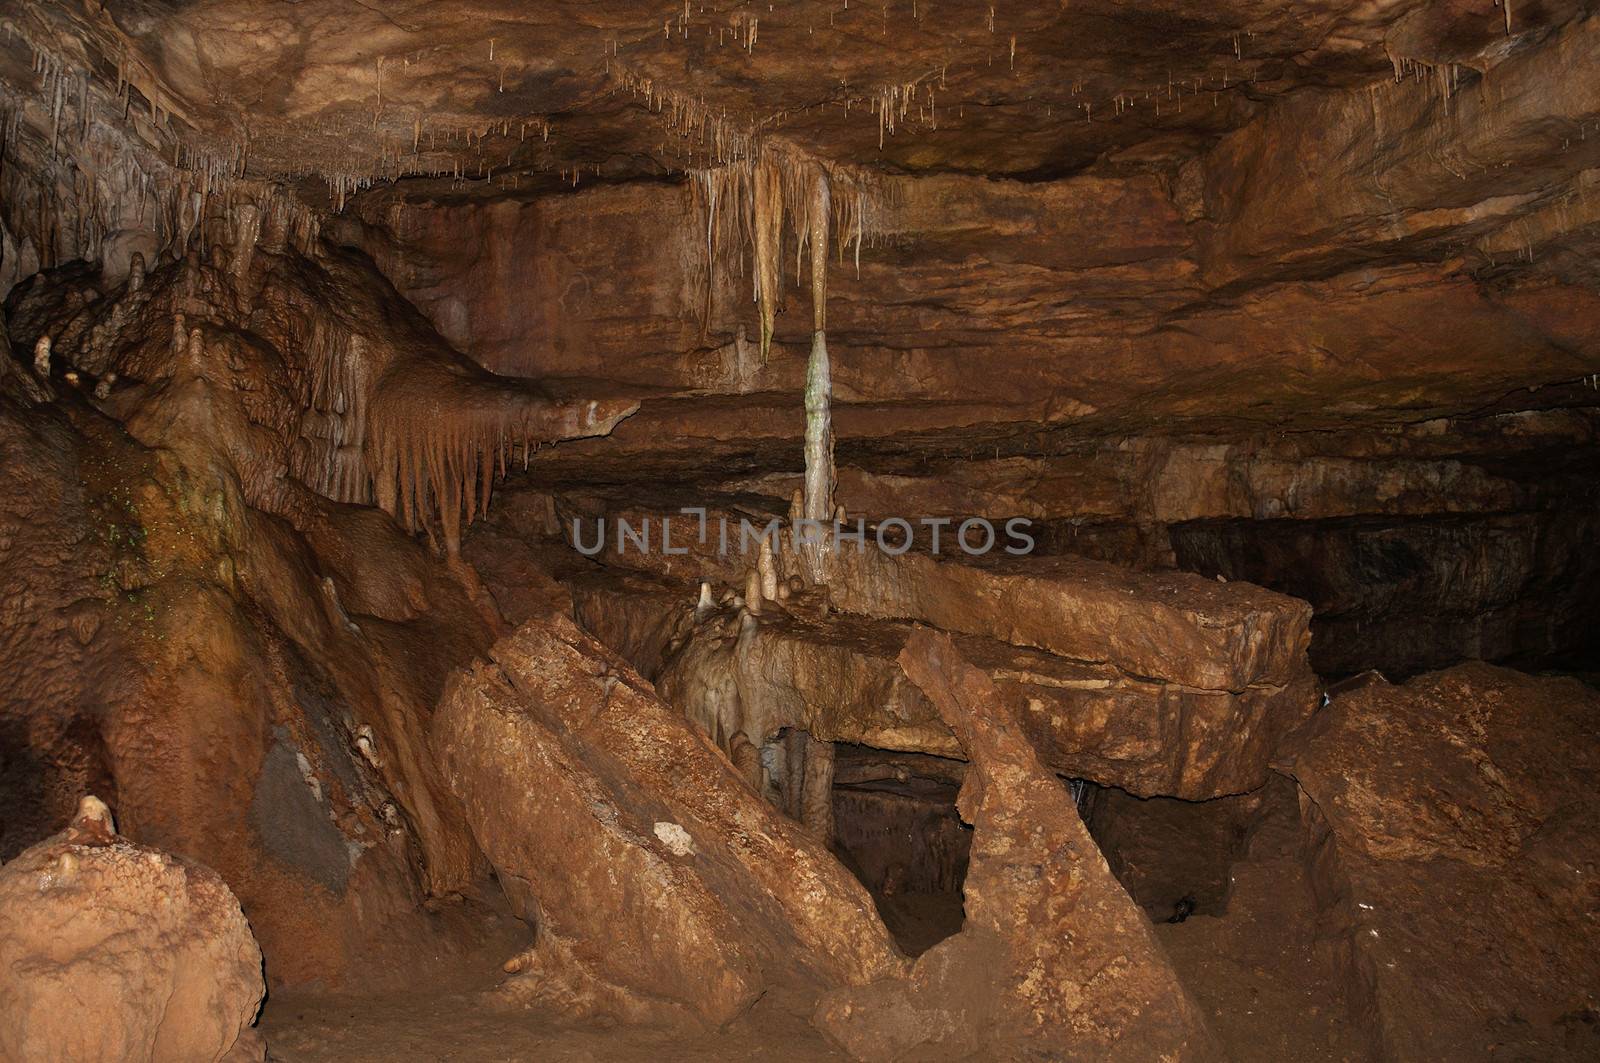 Prometheus cave